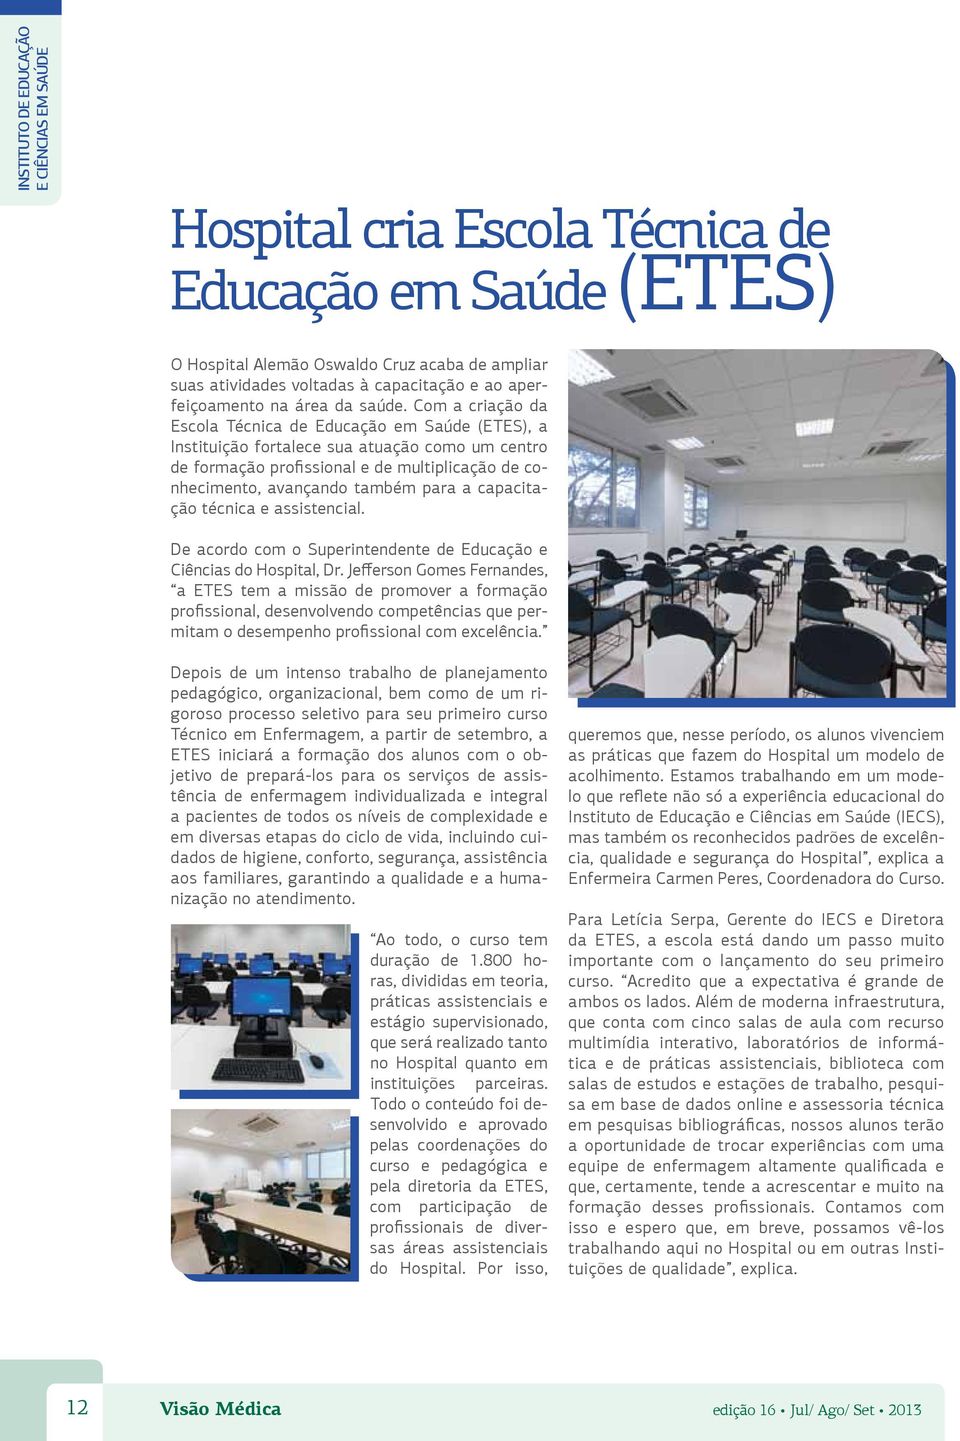 Com a criação da Escola Técnica de Educação em Saúde (ETES), a Instituição fortalece sua atuação como um centro de formação profissional e de multiplicação de conhecimento, avançando também para a